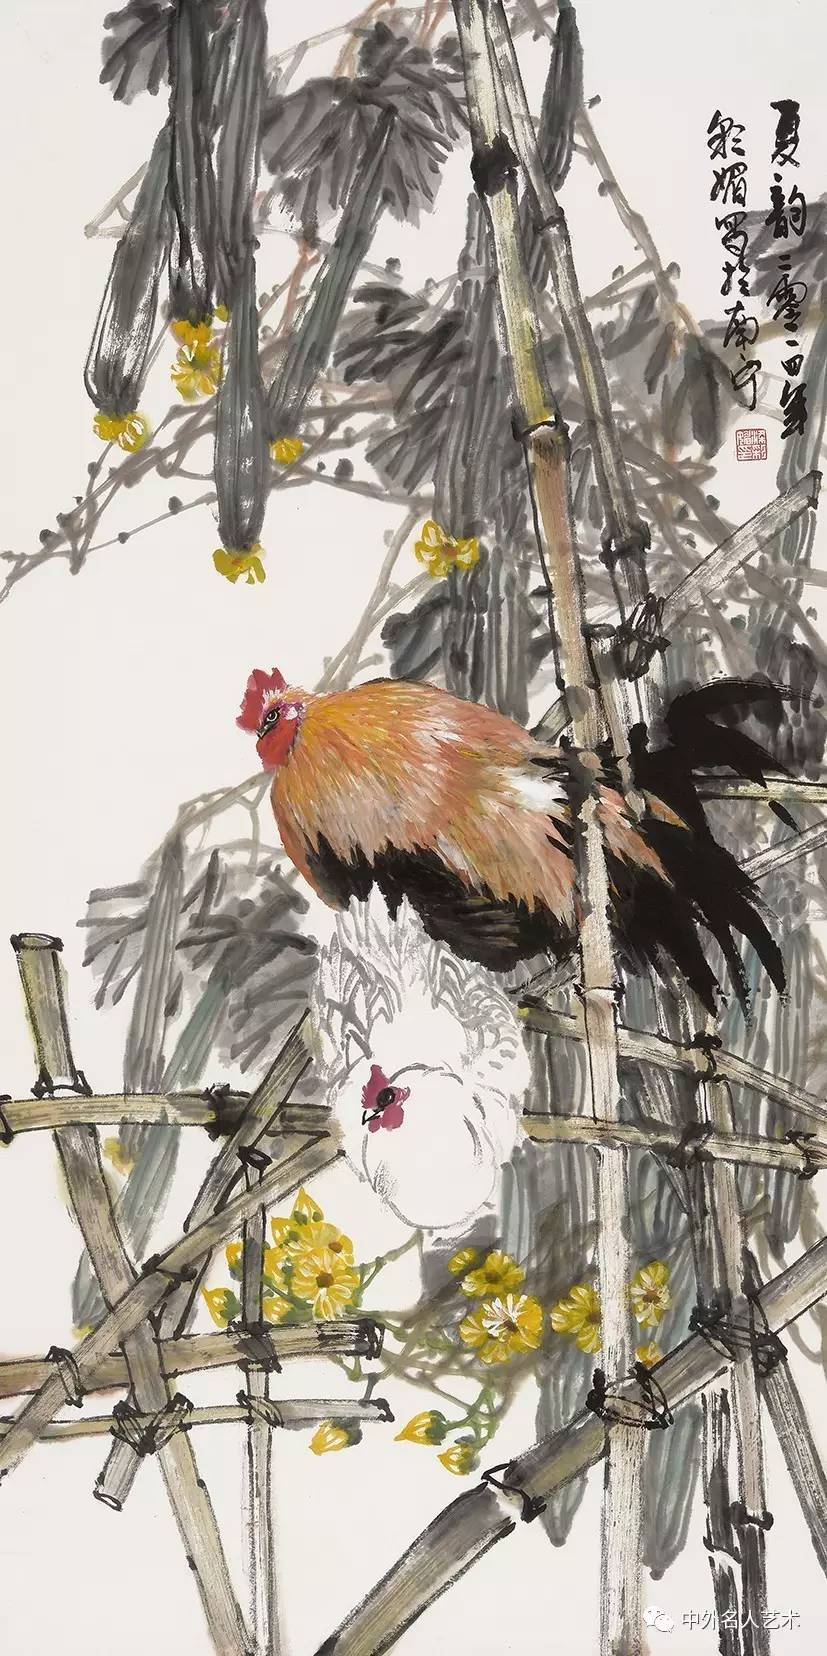 广西艺术学院美术学系中国花鸟画专业研究生班,陈再乾教授是她的导师